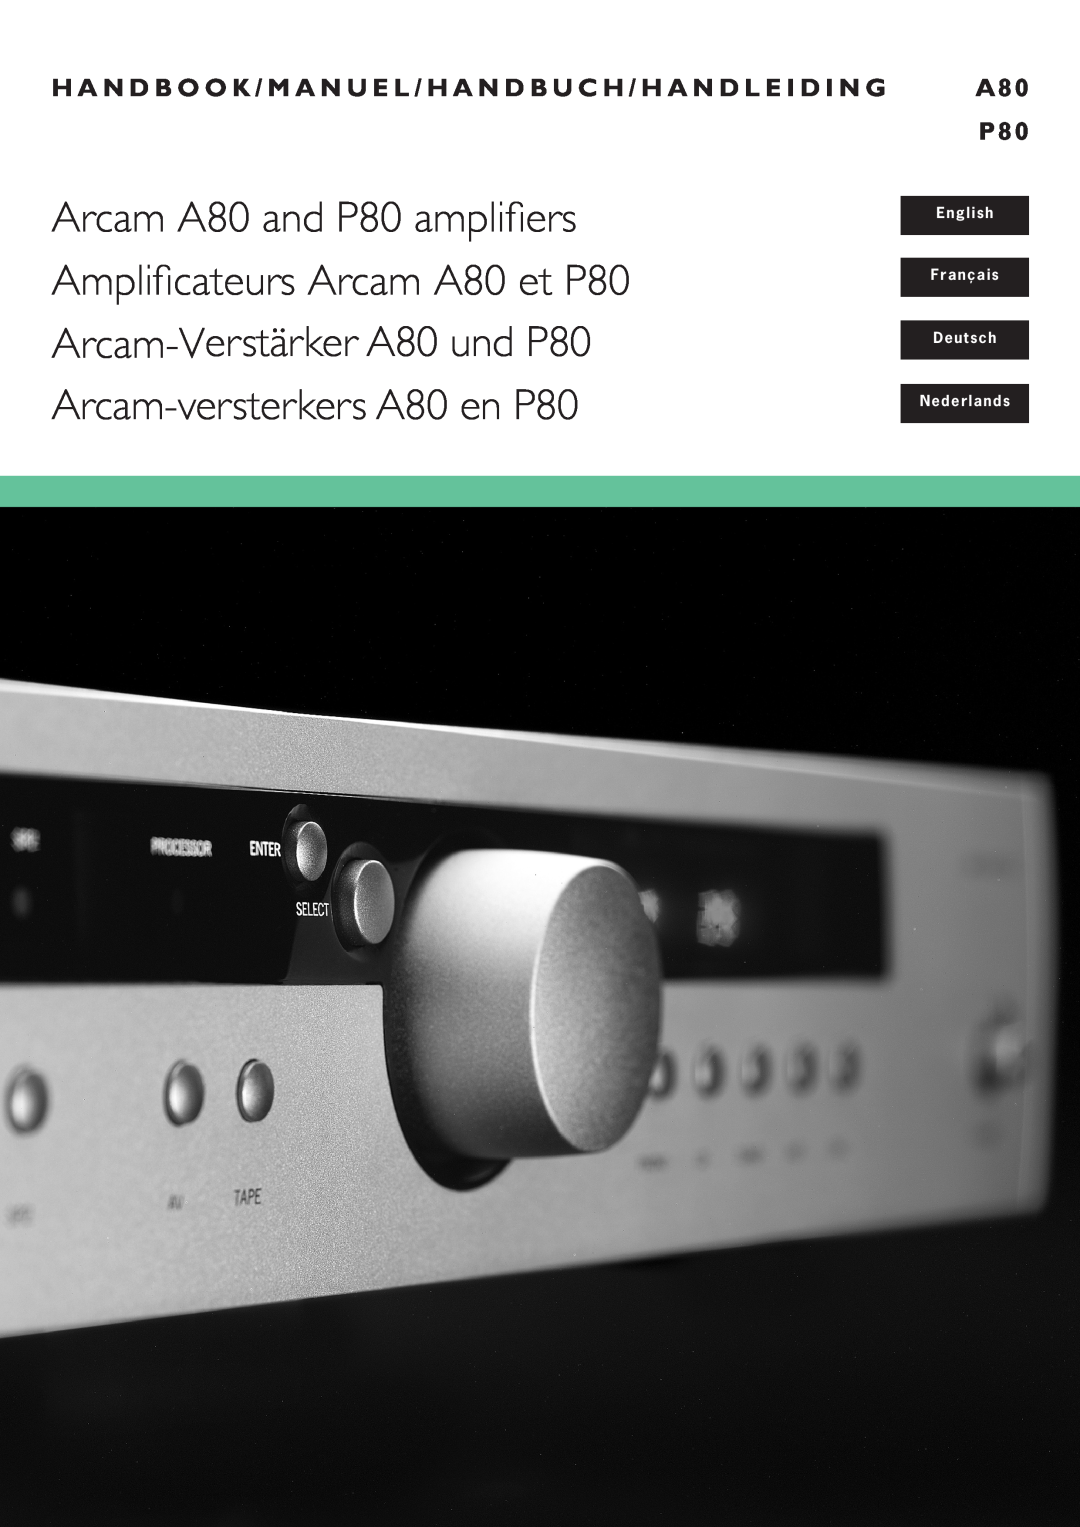 Arcam manual English Français Deutsch Nederlands, Arcam A80 and P80 amplifiers, Amplificateurs Arcam A80 et P80 